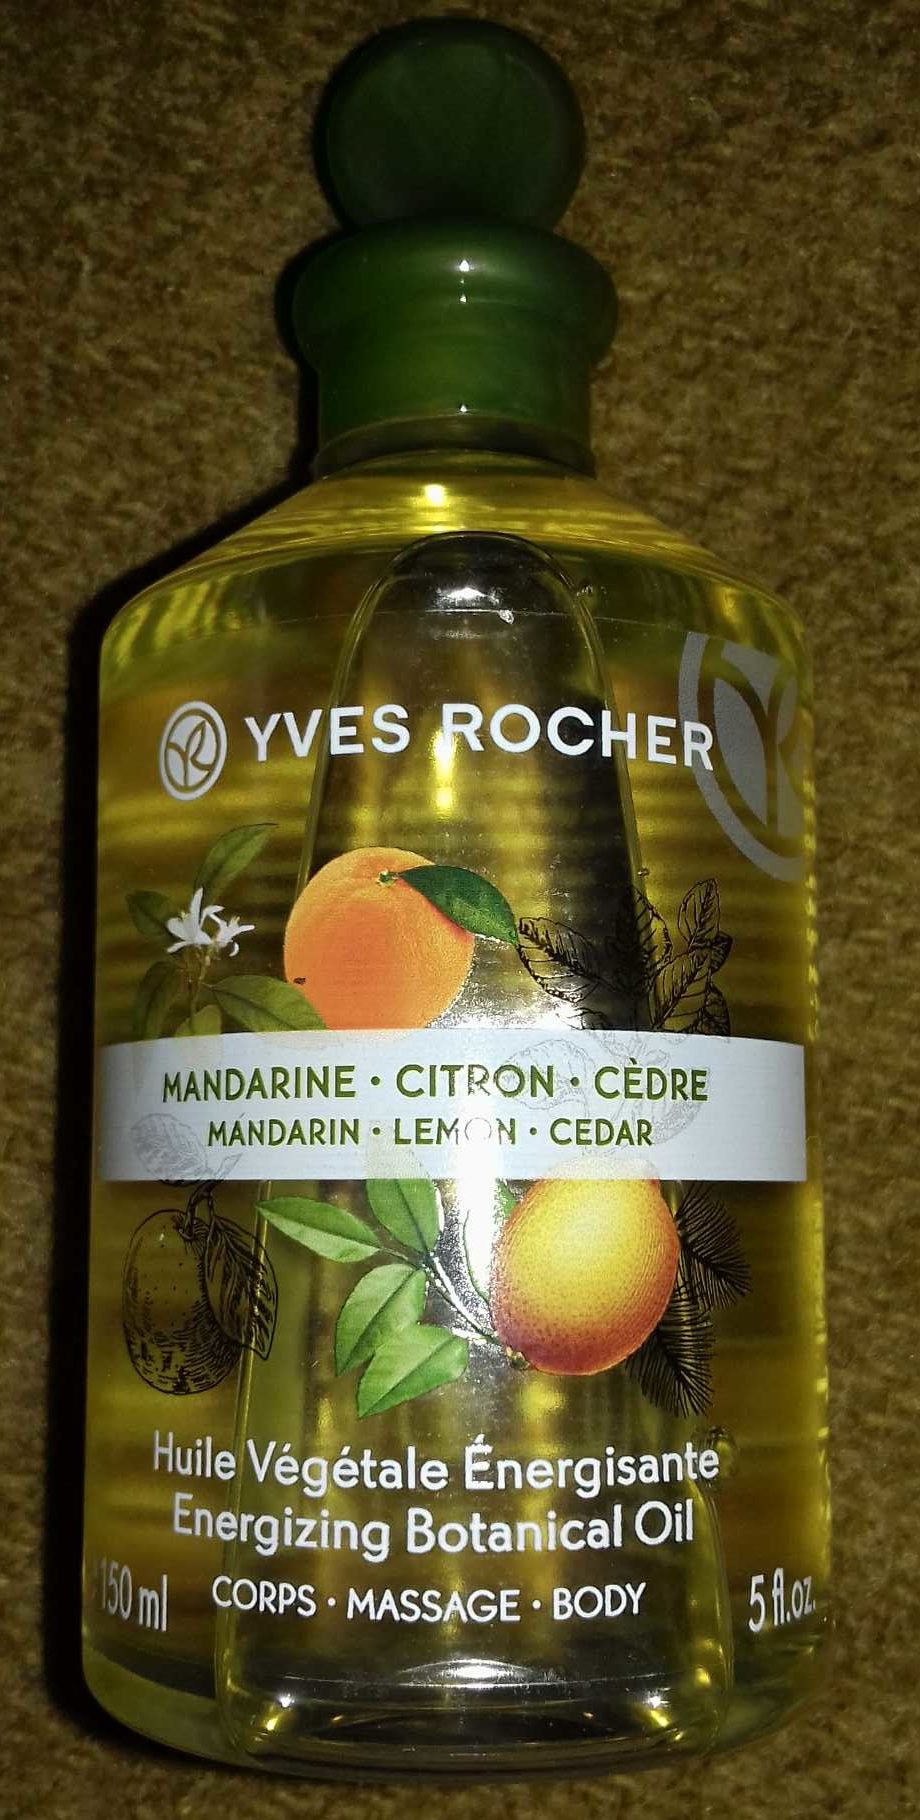 Huile végétale énergisante mandarine citron cèdre - Product - fr